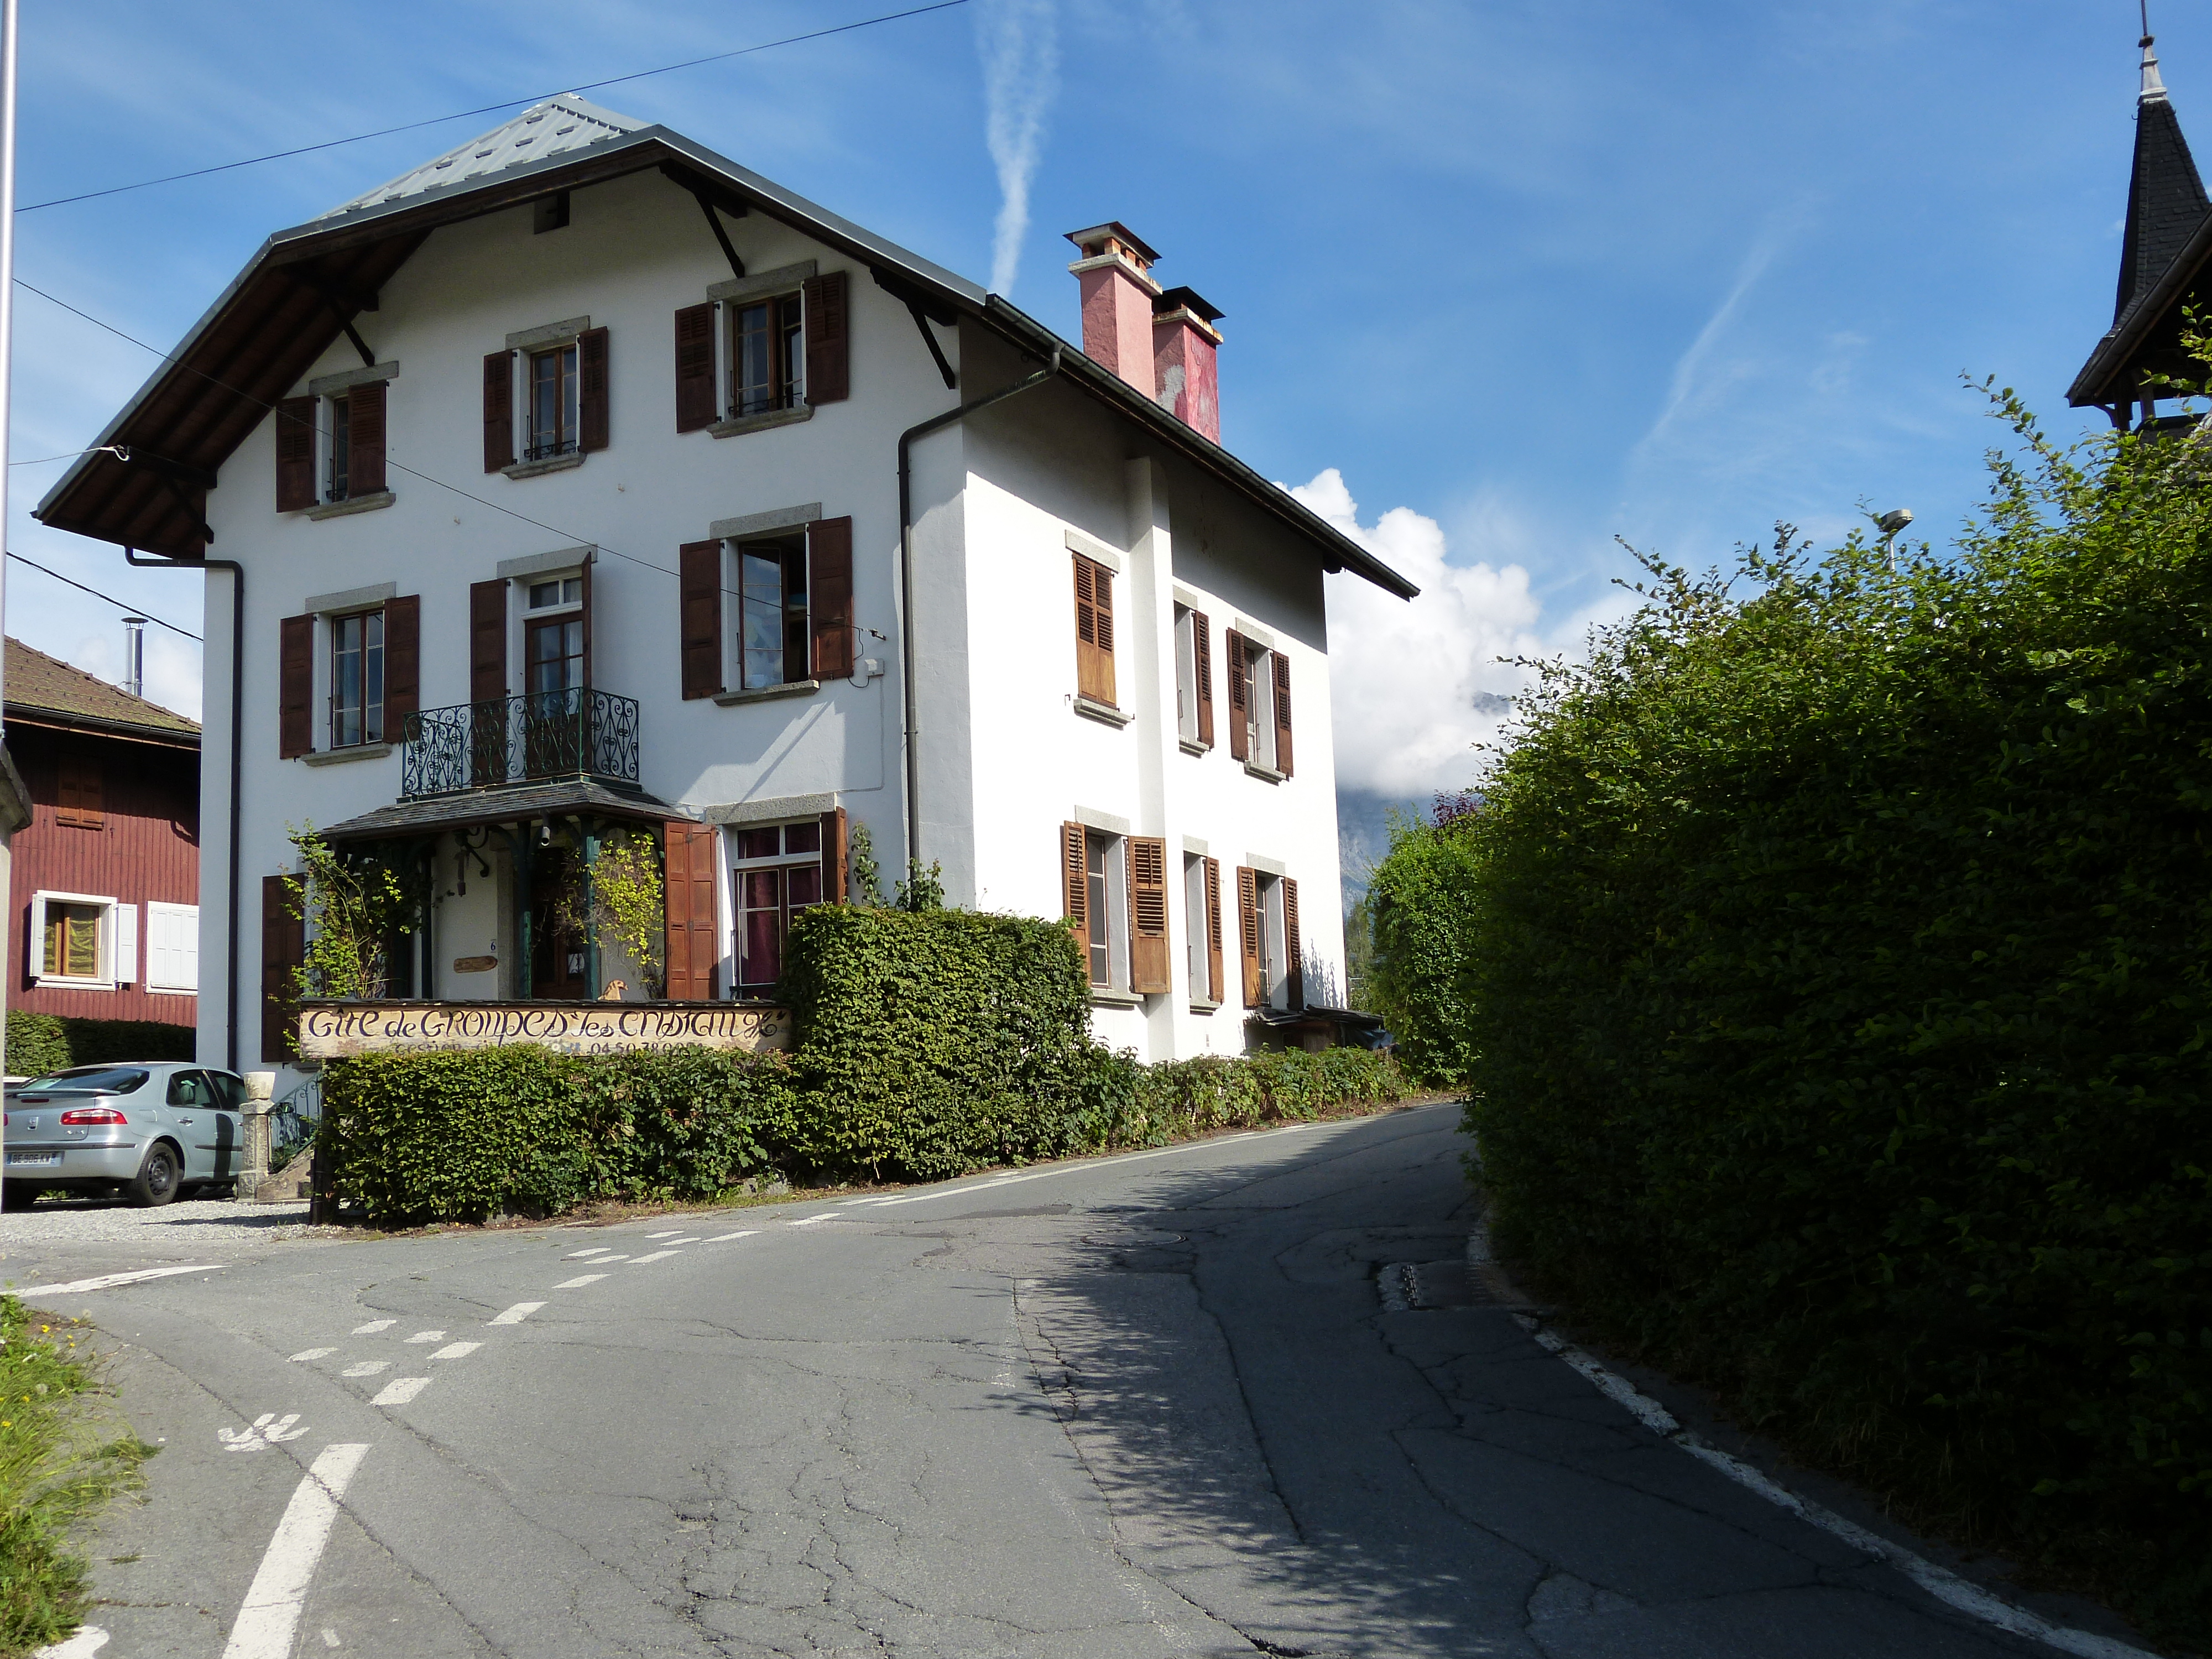 Location LC1863 située à Saint Gervais Les Bains